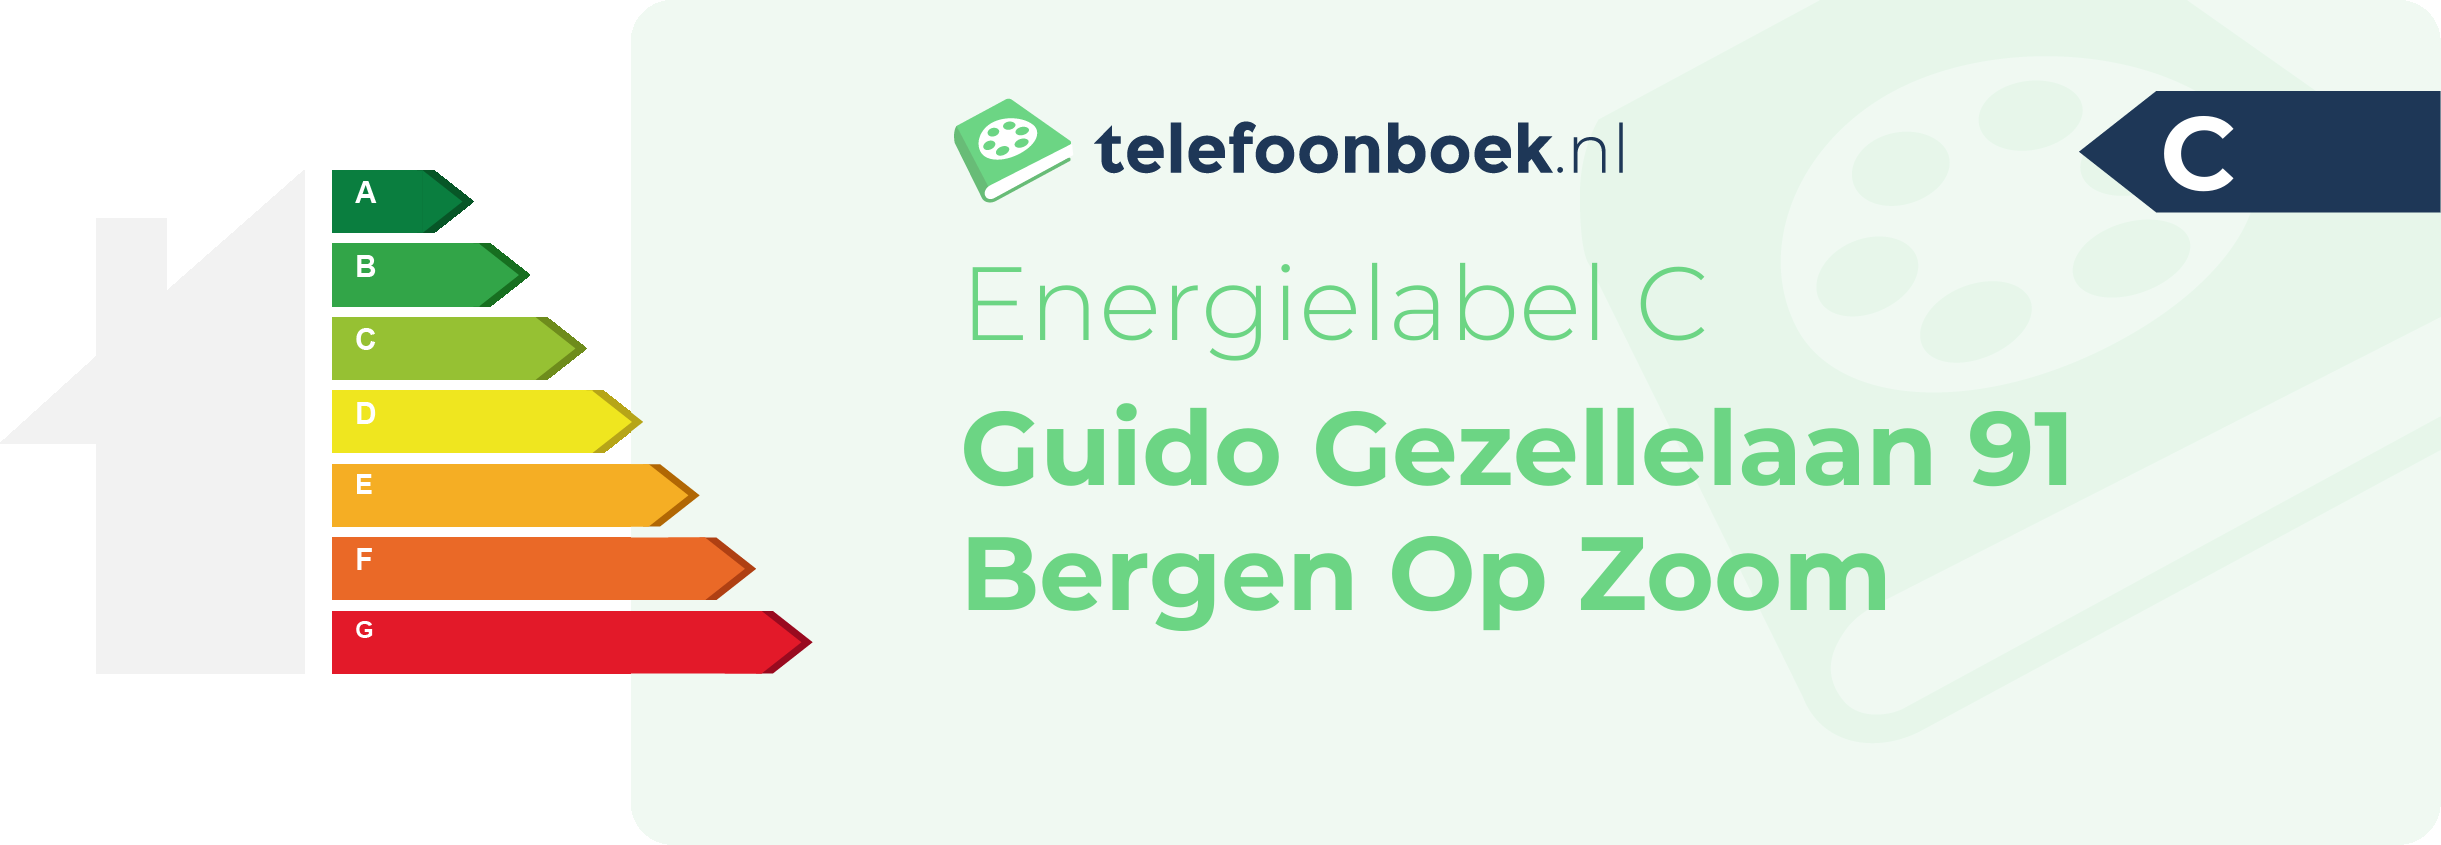 Energielabel Guido Gezellelaan 91 Bergen Op Zoom